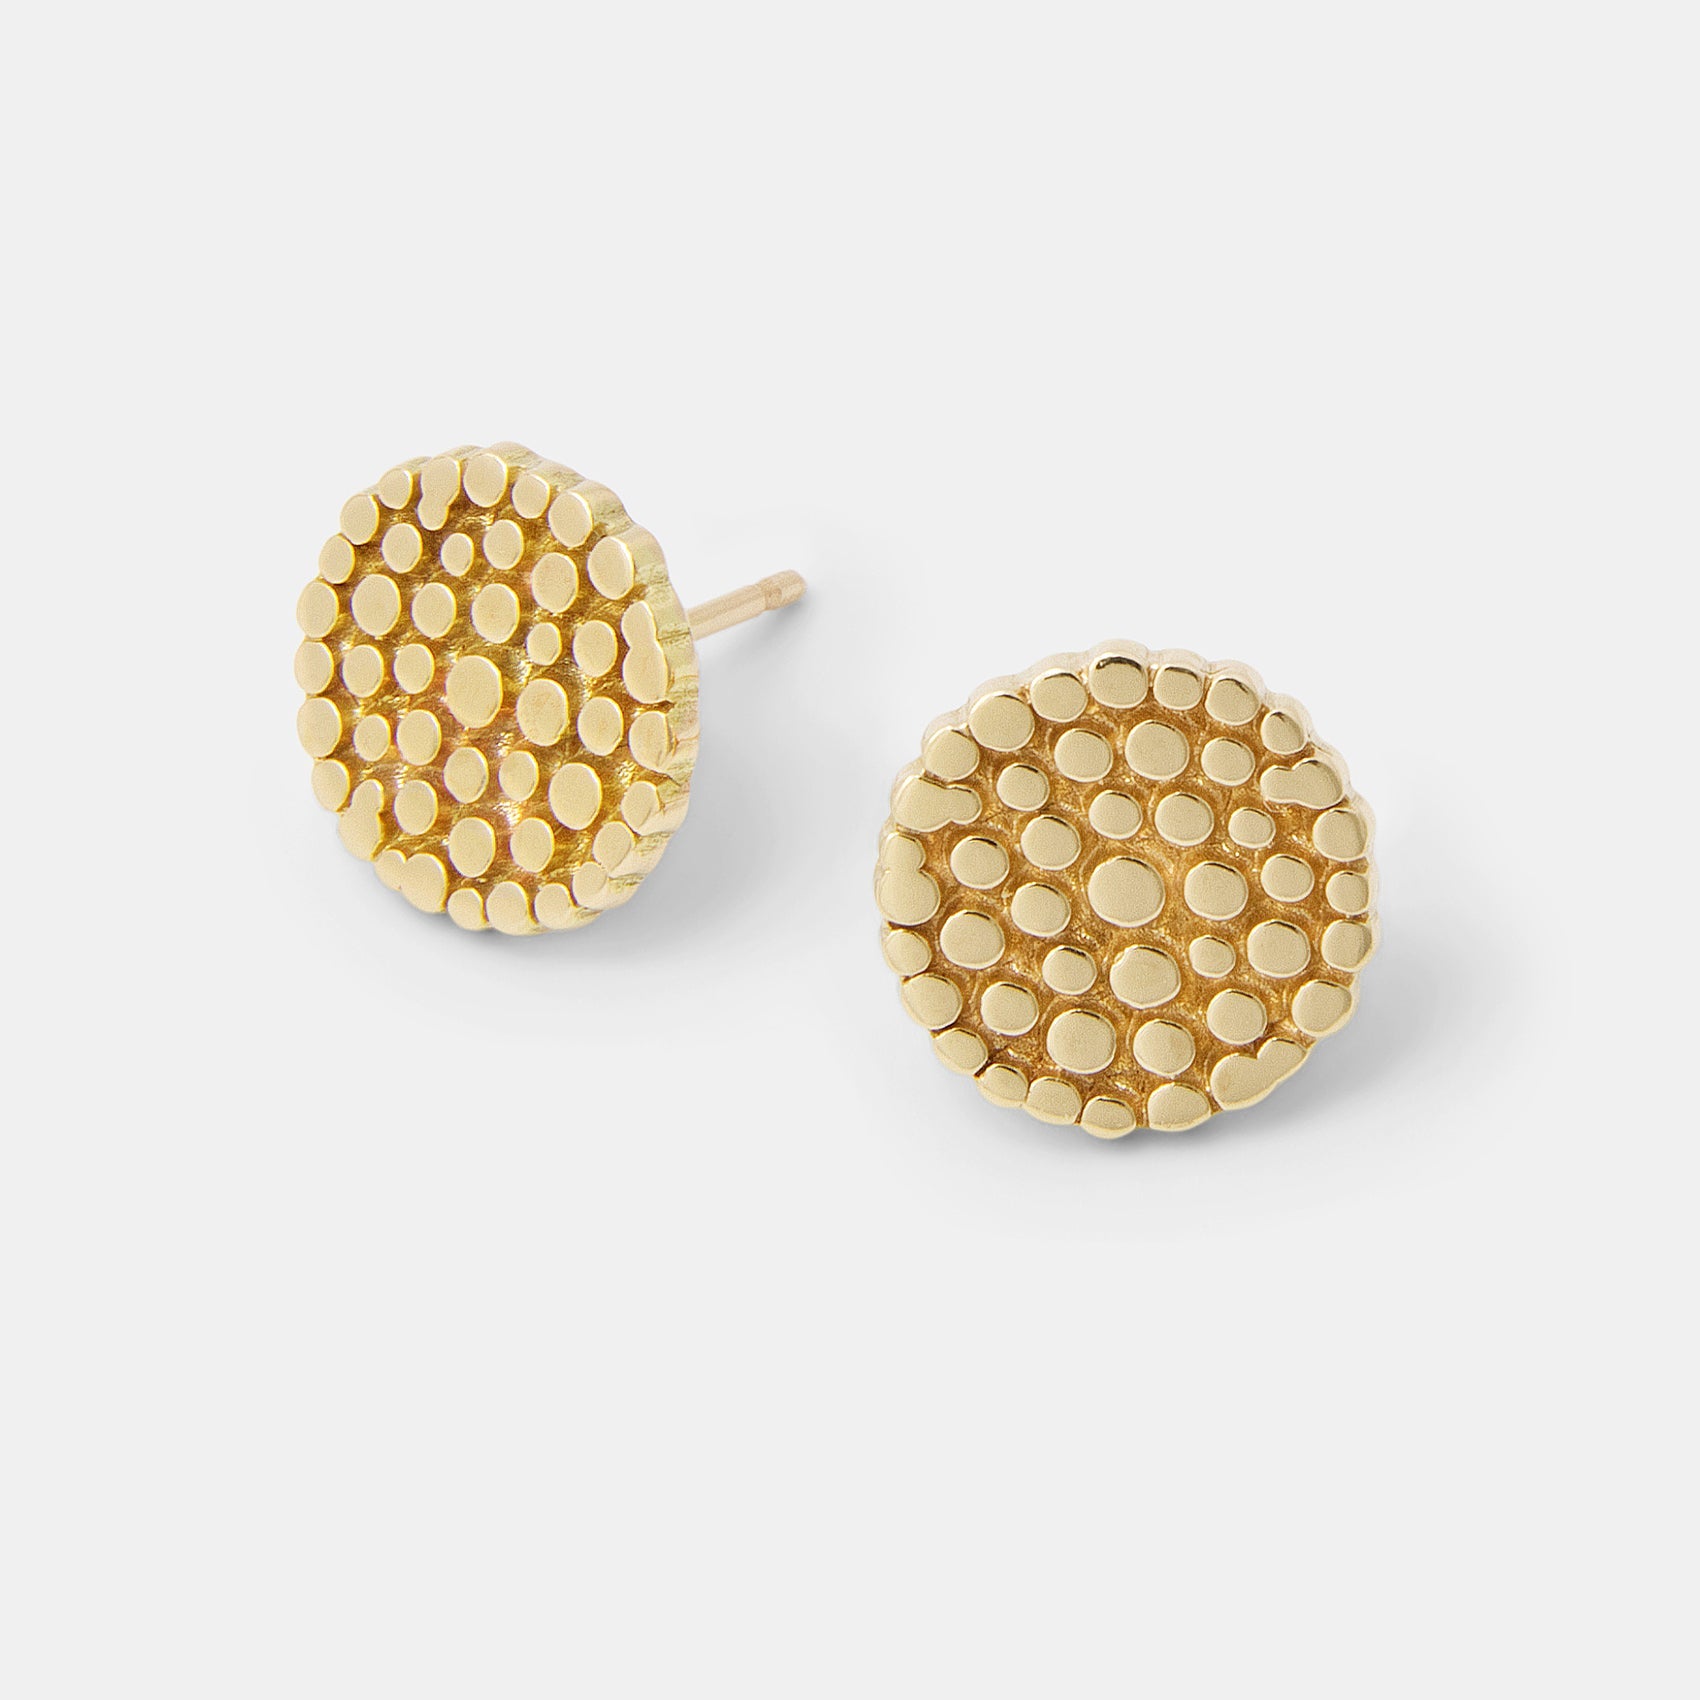 Wattle blossom solid gold stud earrings - Simone Walsh Jewellery Australia